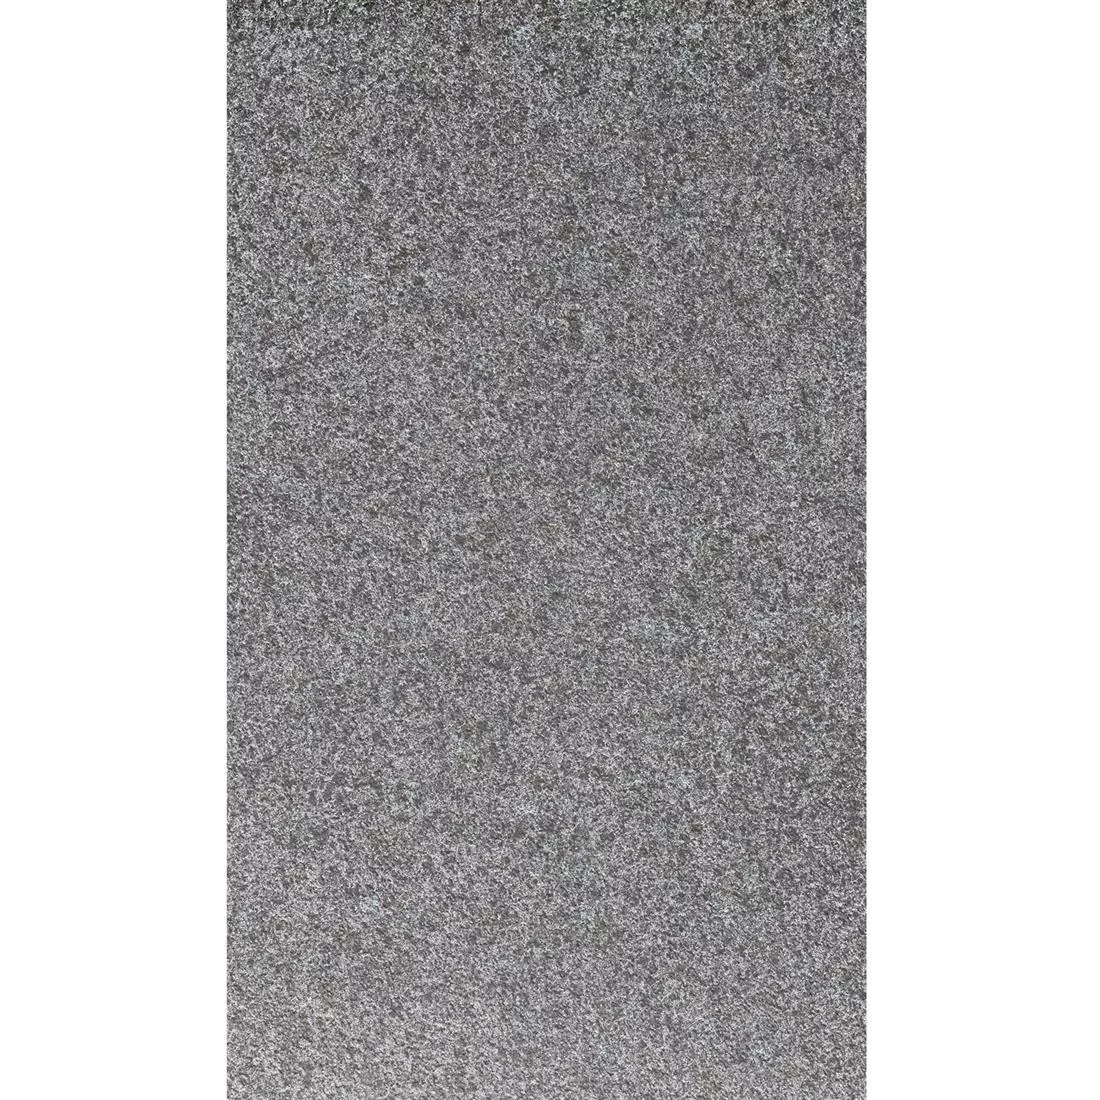 Ploče Za Terasu Stoneway Imitacija Prirodnog Kamena Crna 60x90cm